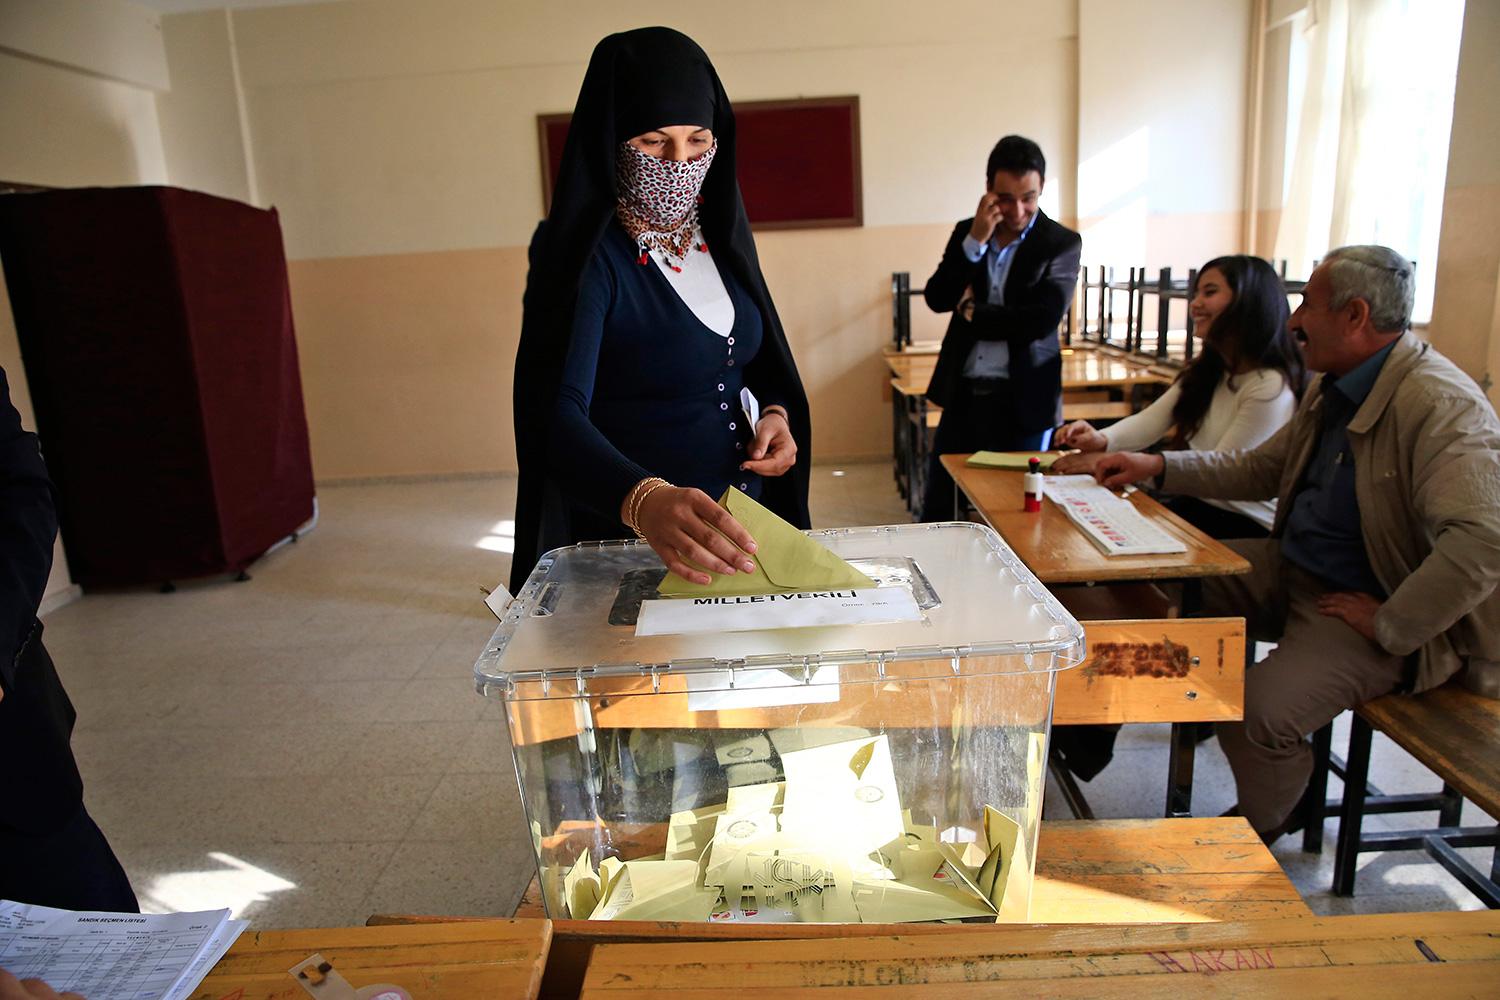 En kvinna lägger sin röstsedel i en valurna i Cizre.